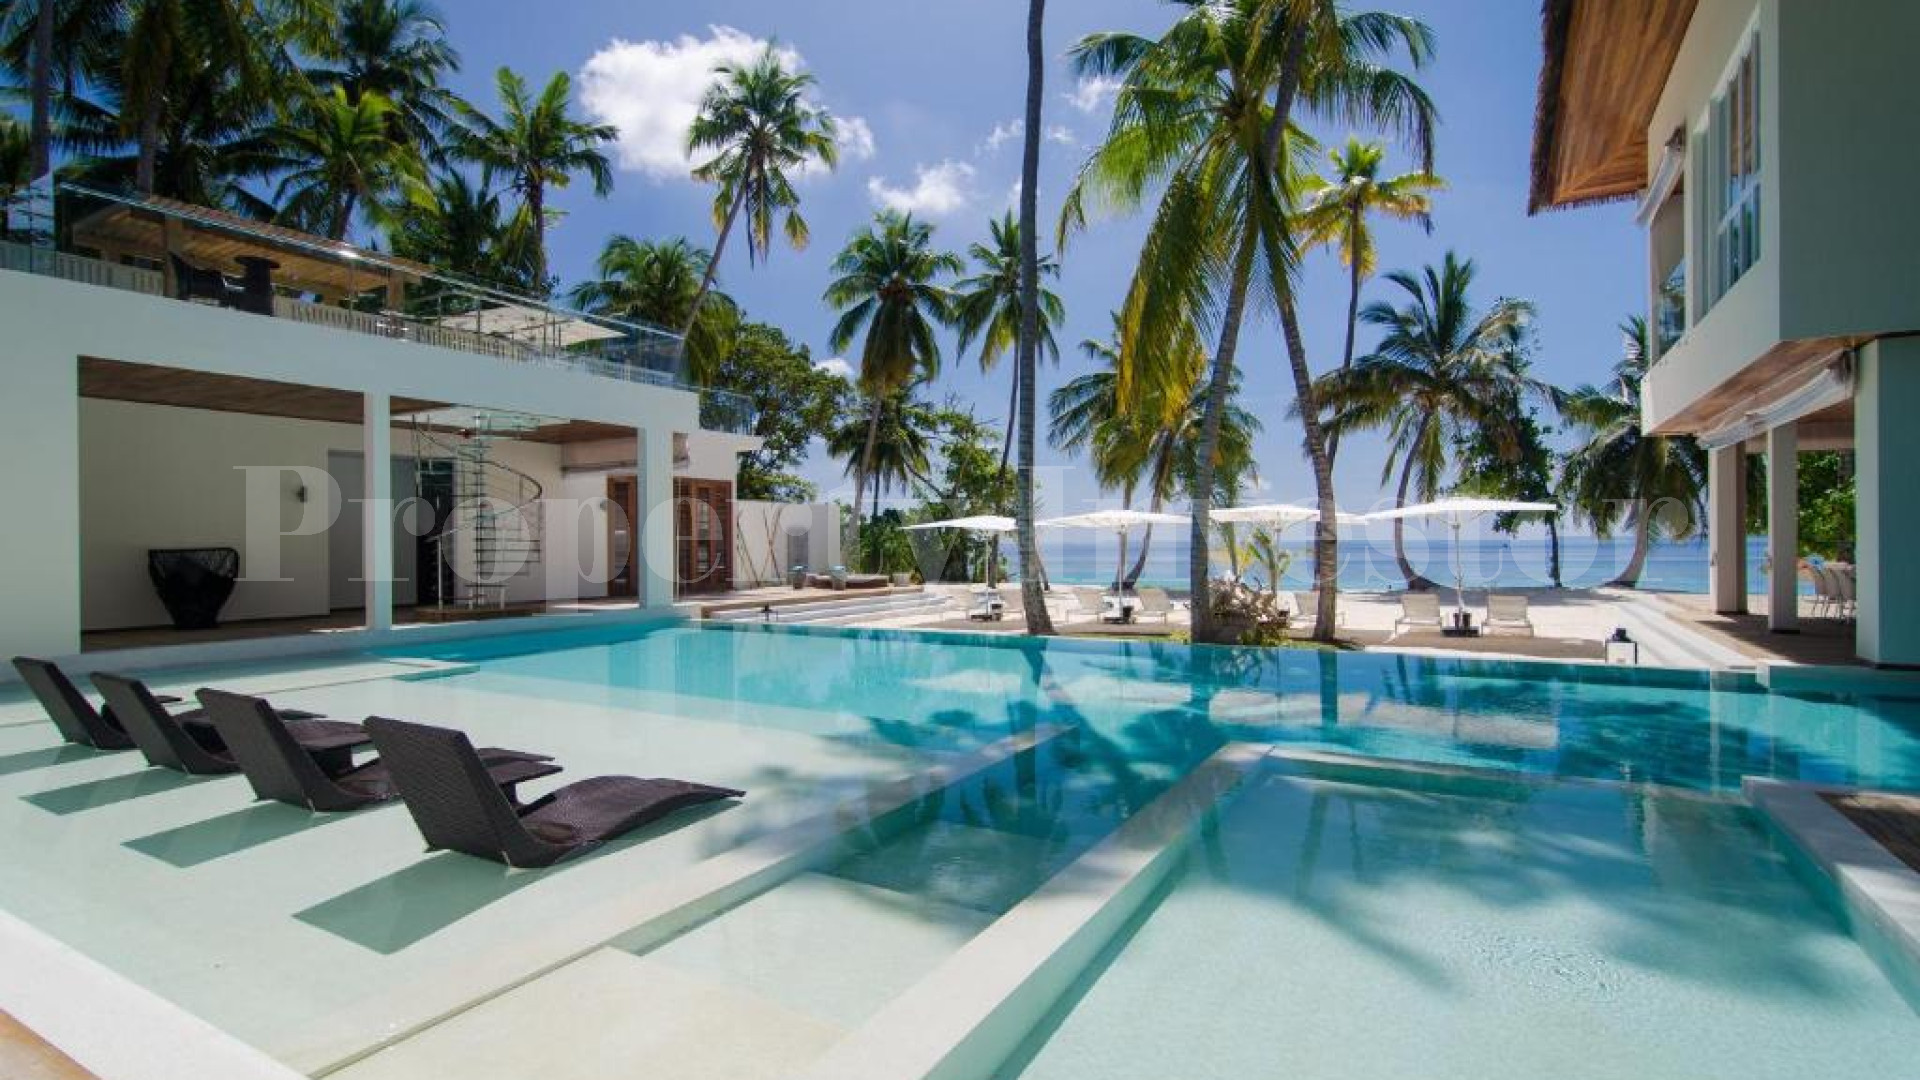 Эксклюзивная курортная частная резиденция с 6 спальнями на пляже на Мальдивах